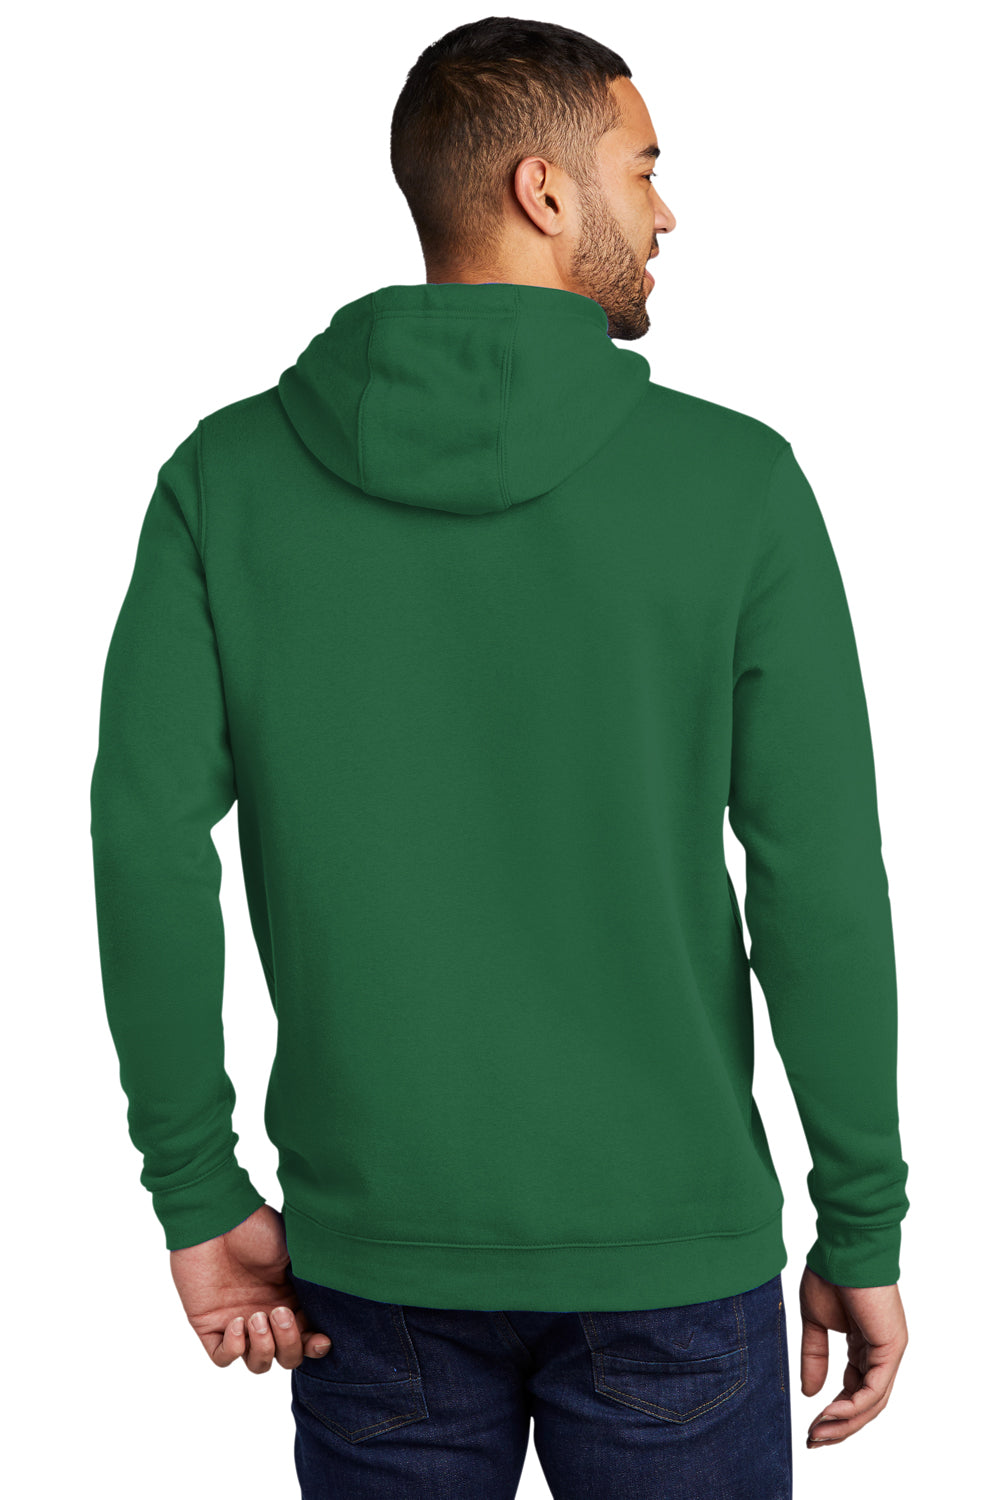 Nike CJ1611 Mens Club Fleece Hooded Sweatshirt Hoodie Dark Green Model Back